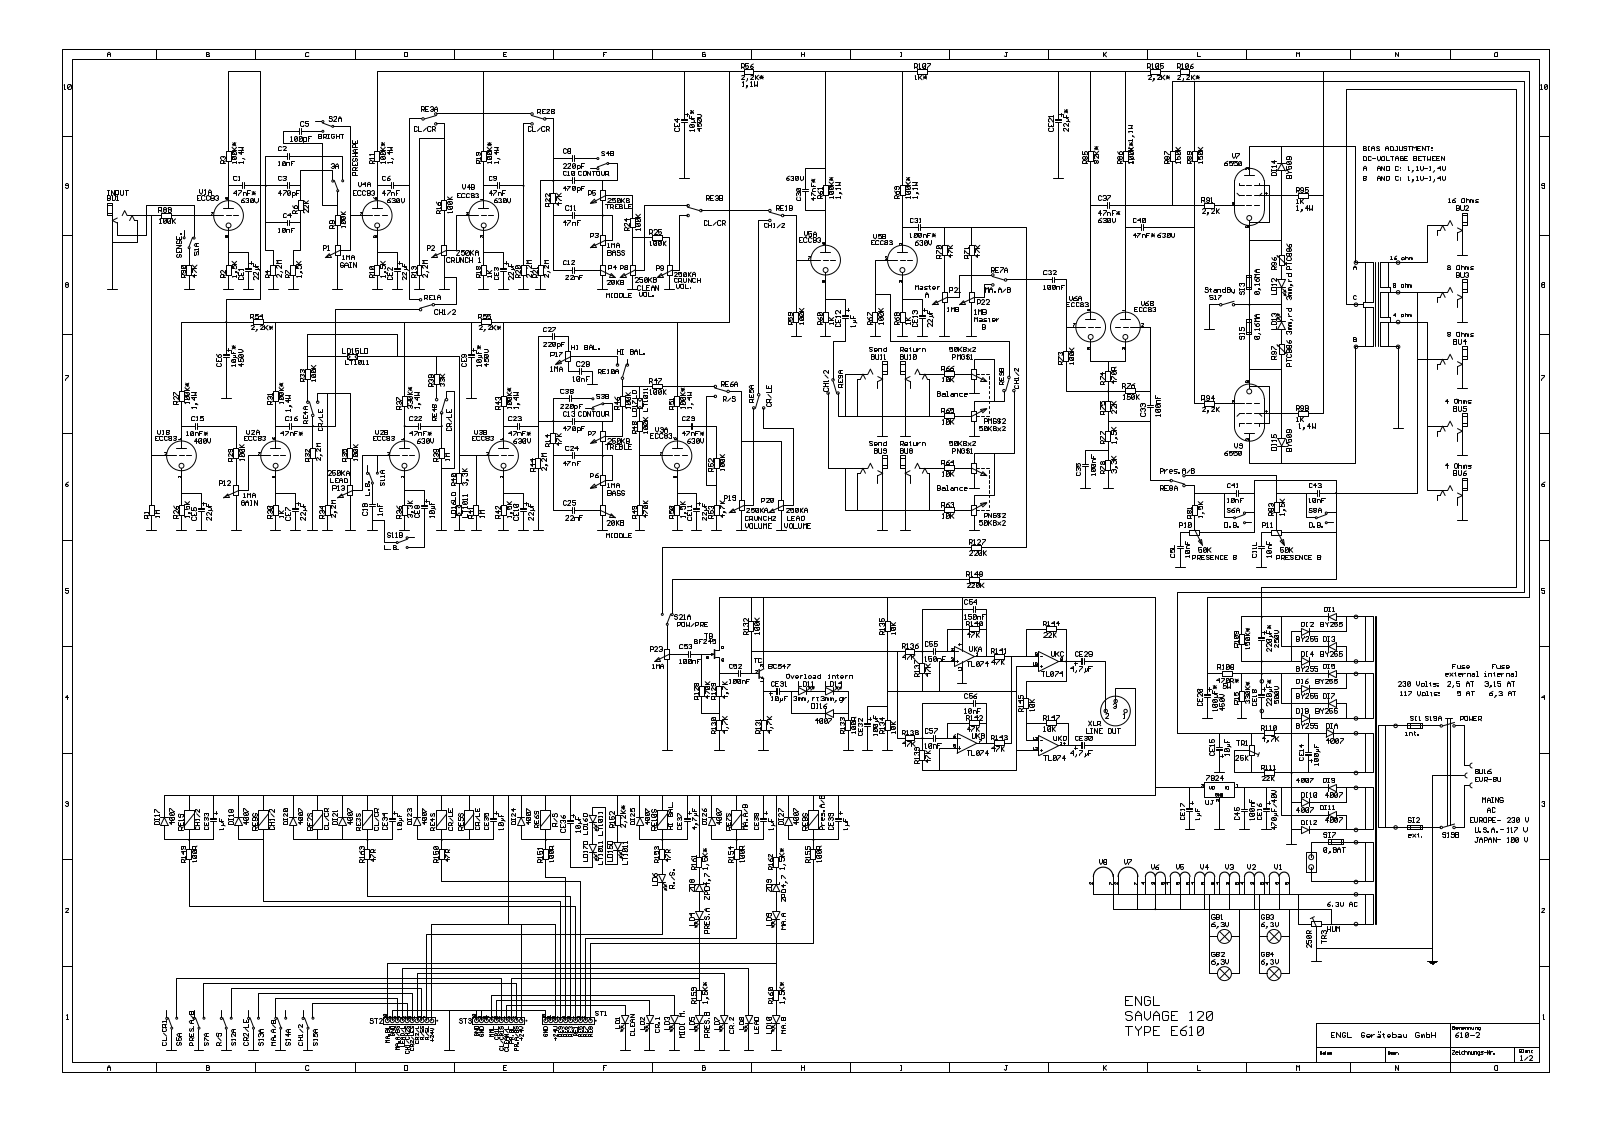 Engl e610 schematic